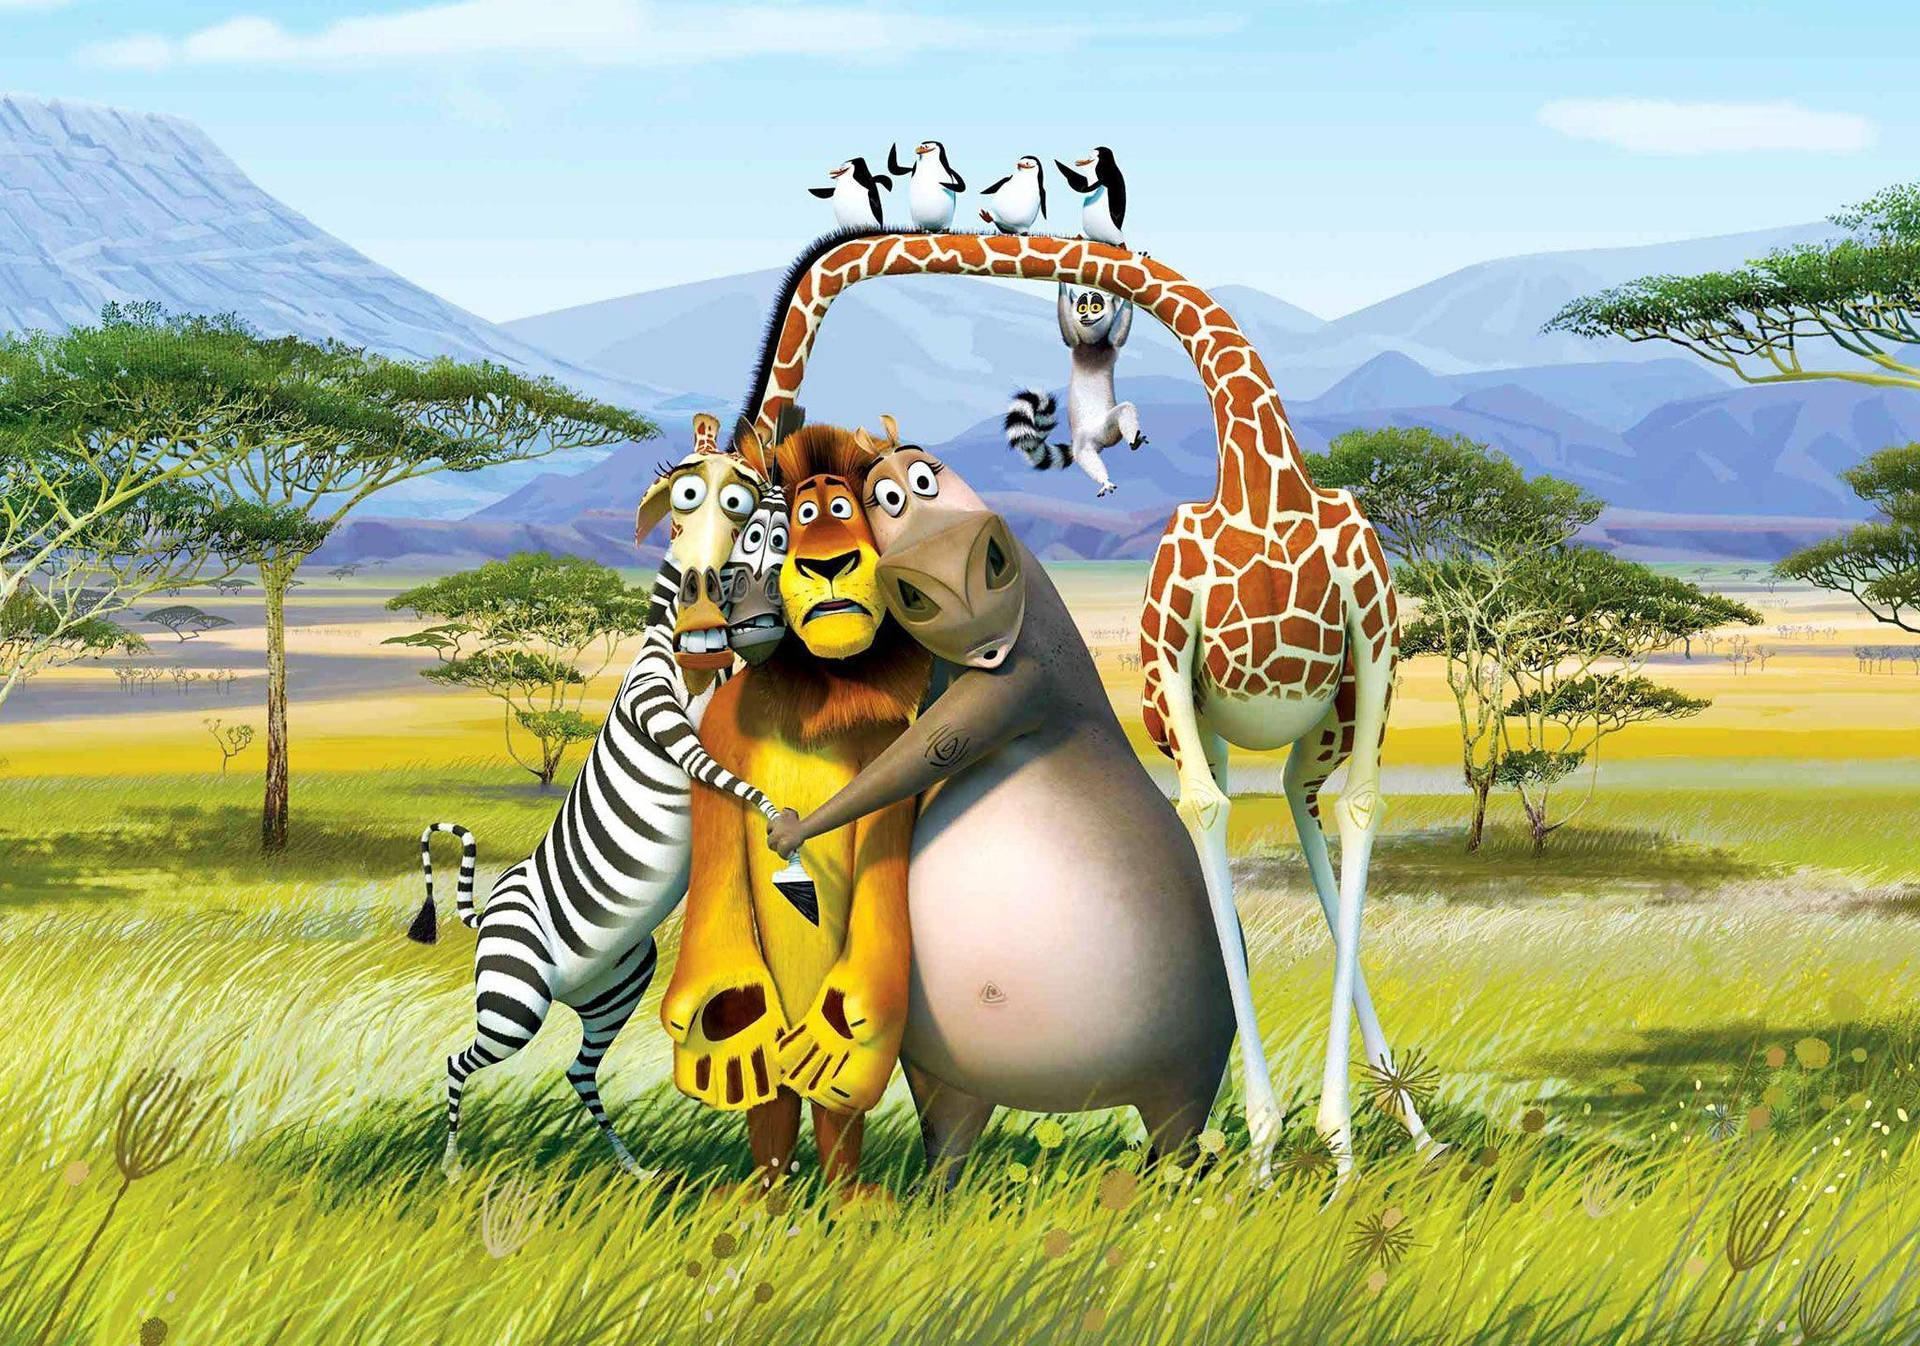 Cartoons In Madagascar: Escape 2 Africa Picture